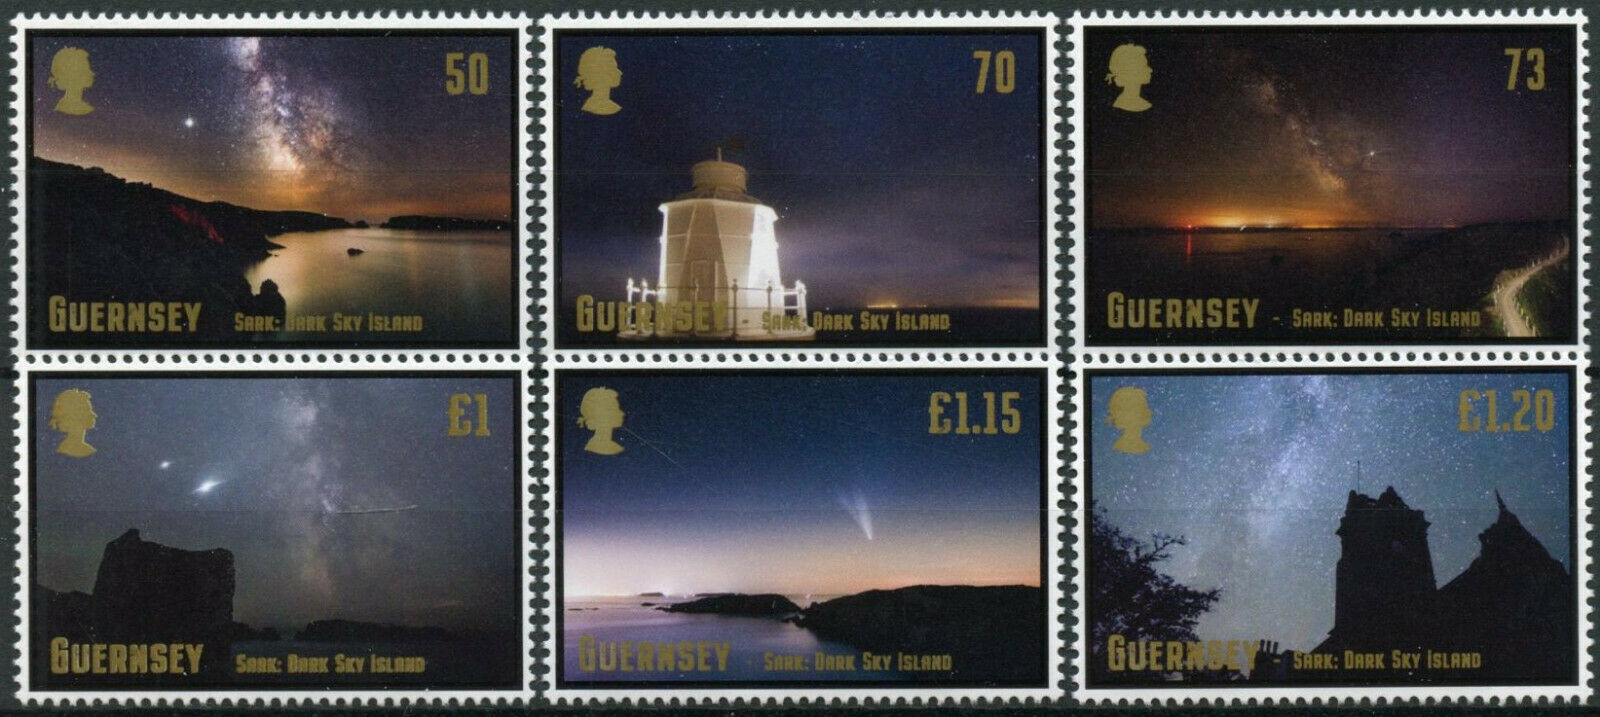 Guernsey 2021 MNH Landscapes Stamps Sark Dark Sky Island Space 6v Set